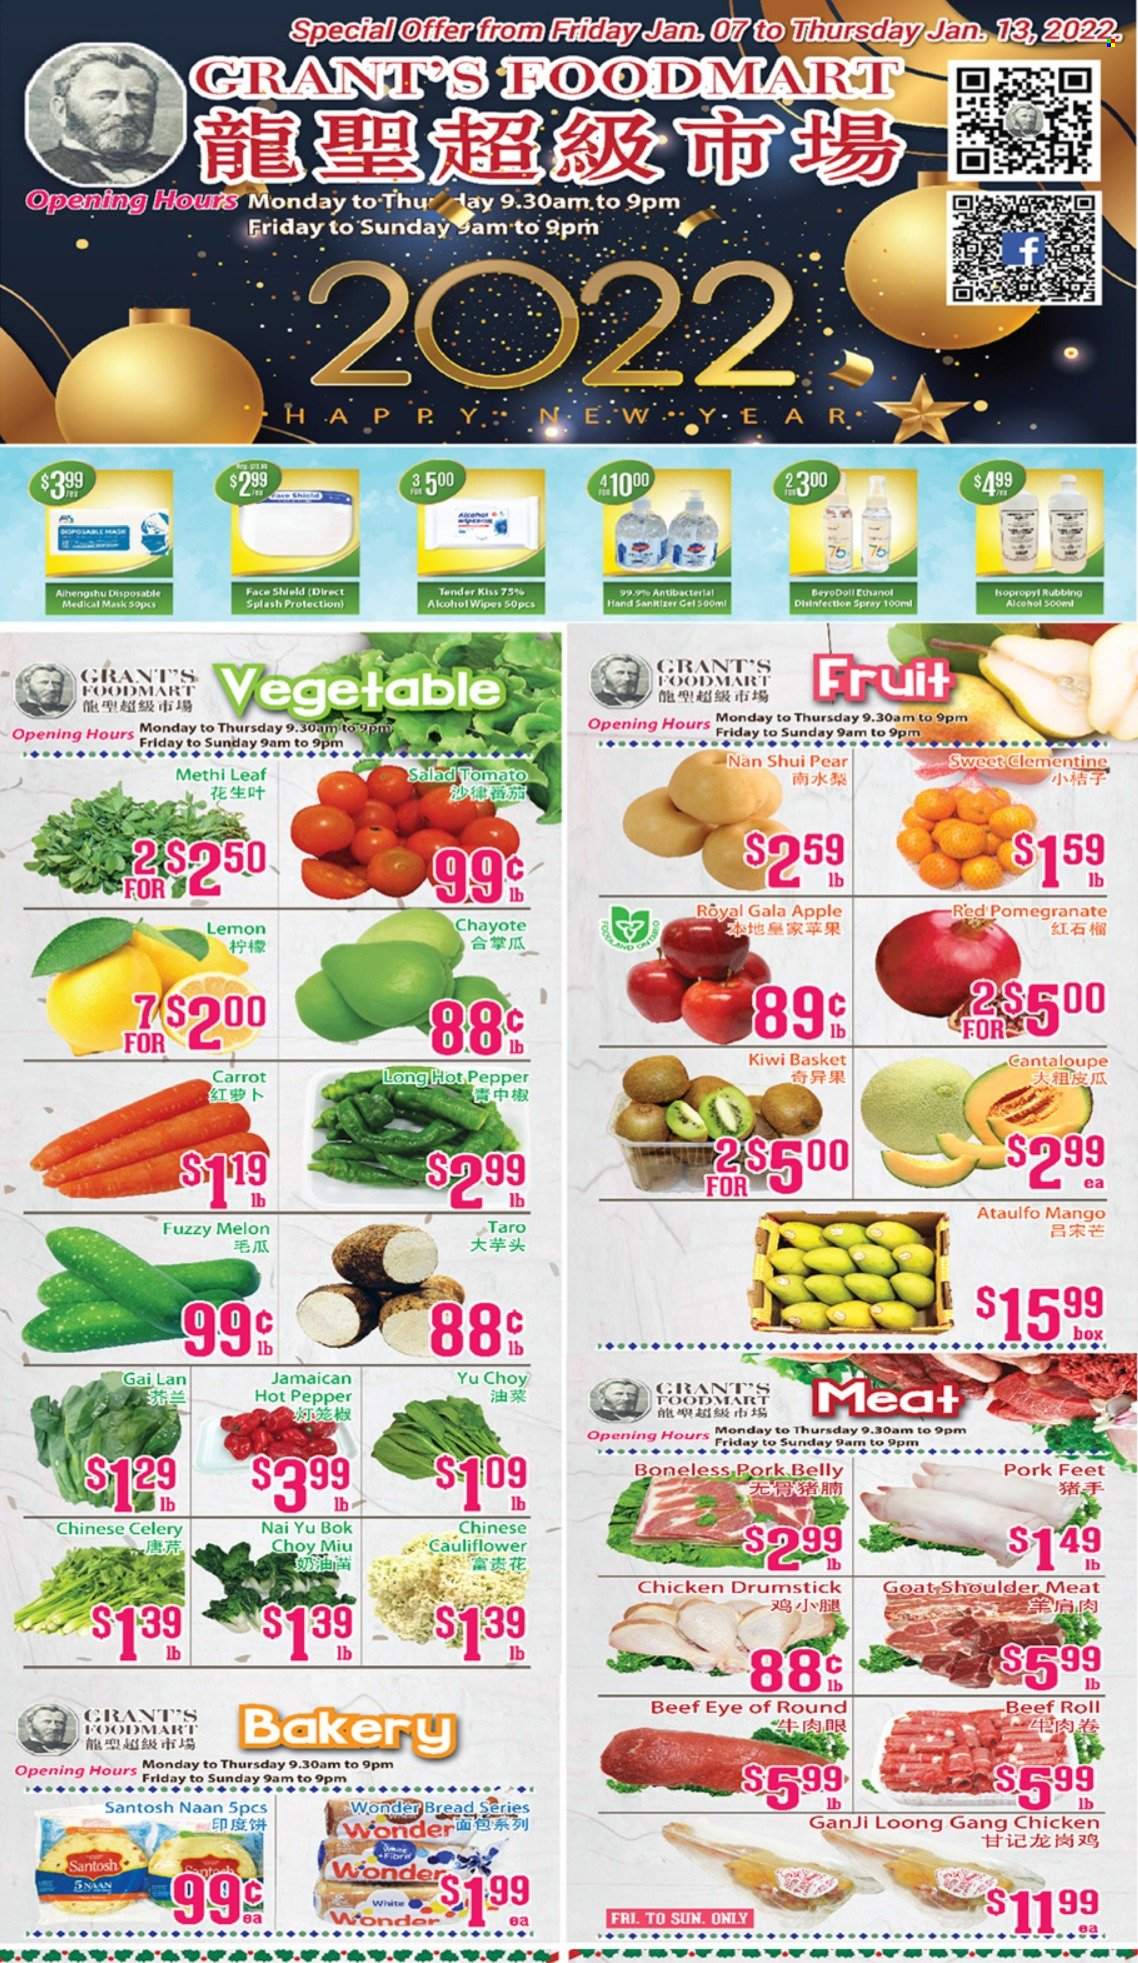 thumbnail - Circulaire Grant's Foodmart - 07 Janvier 2022 - 13 Janvier 2022 - Produits soldés - kiwi, clémentines, melon, LU. Page 1.